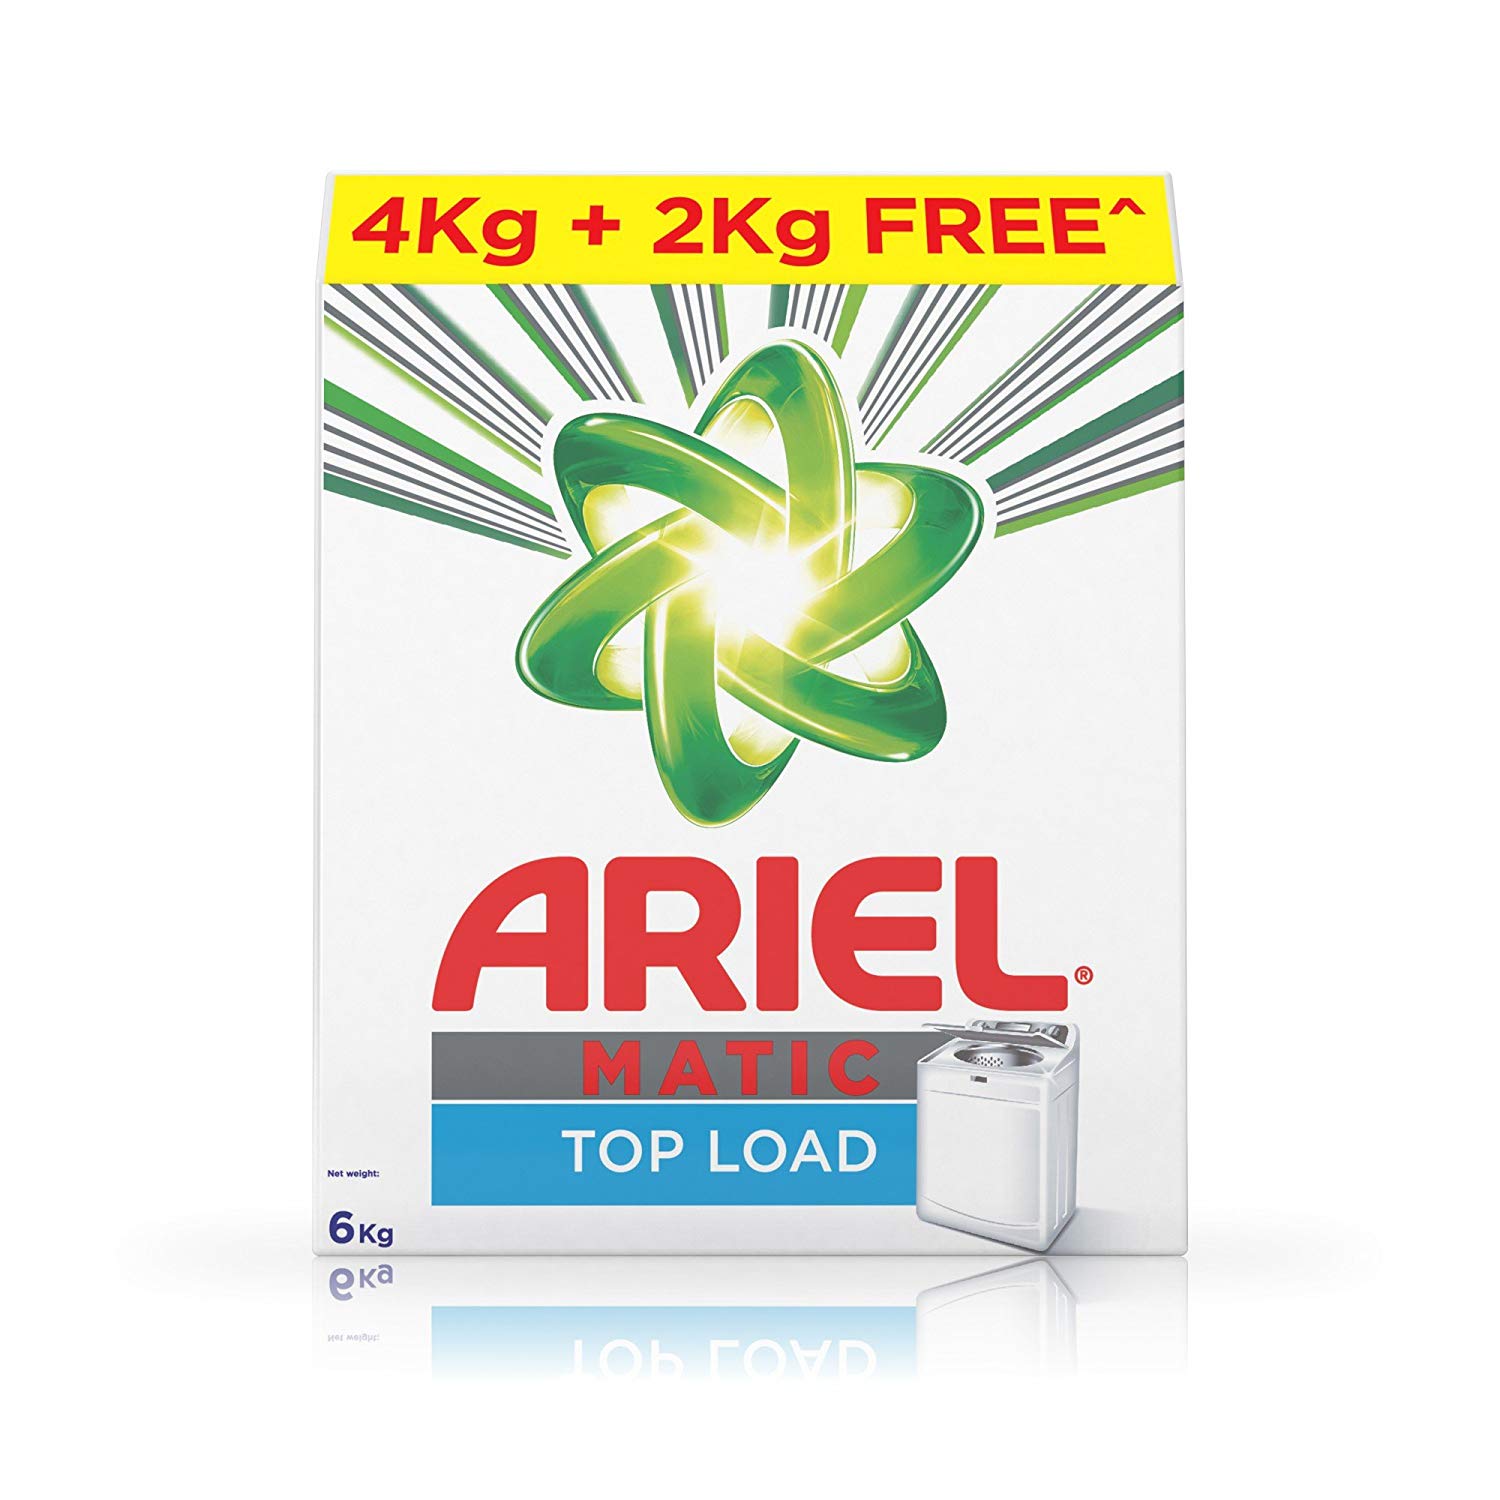 Ariel Matic Top Load Detergent Washing Powder - 6 kg